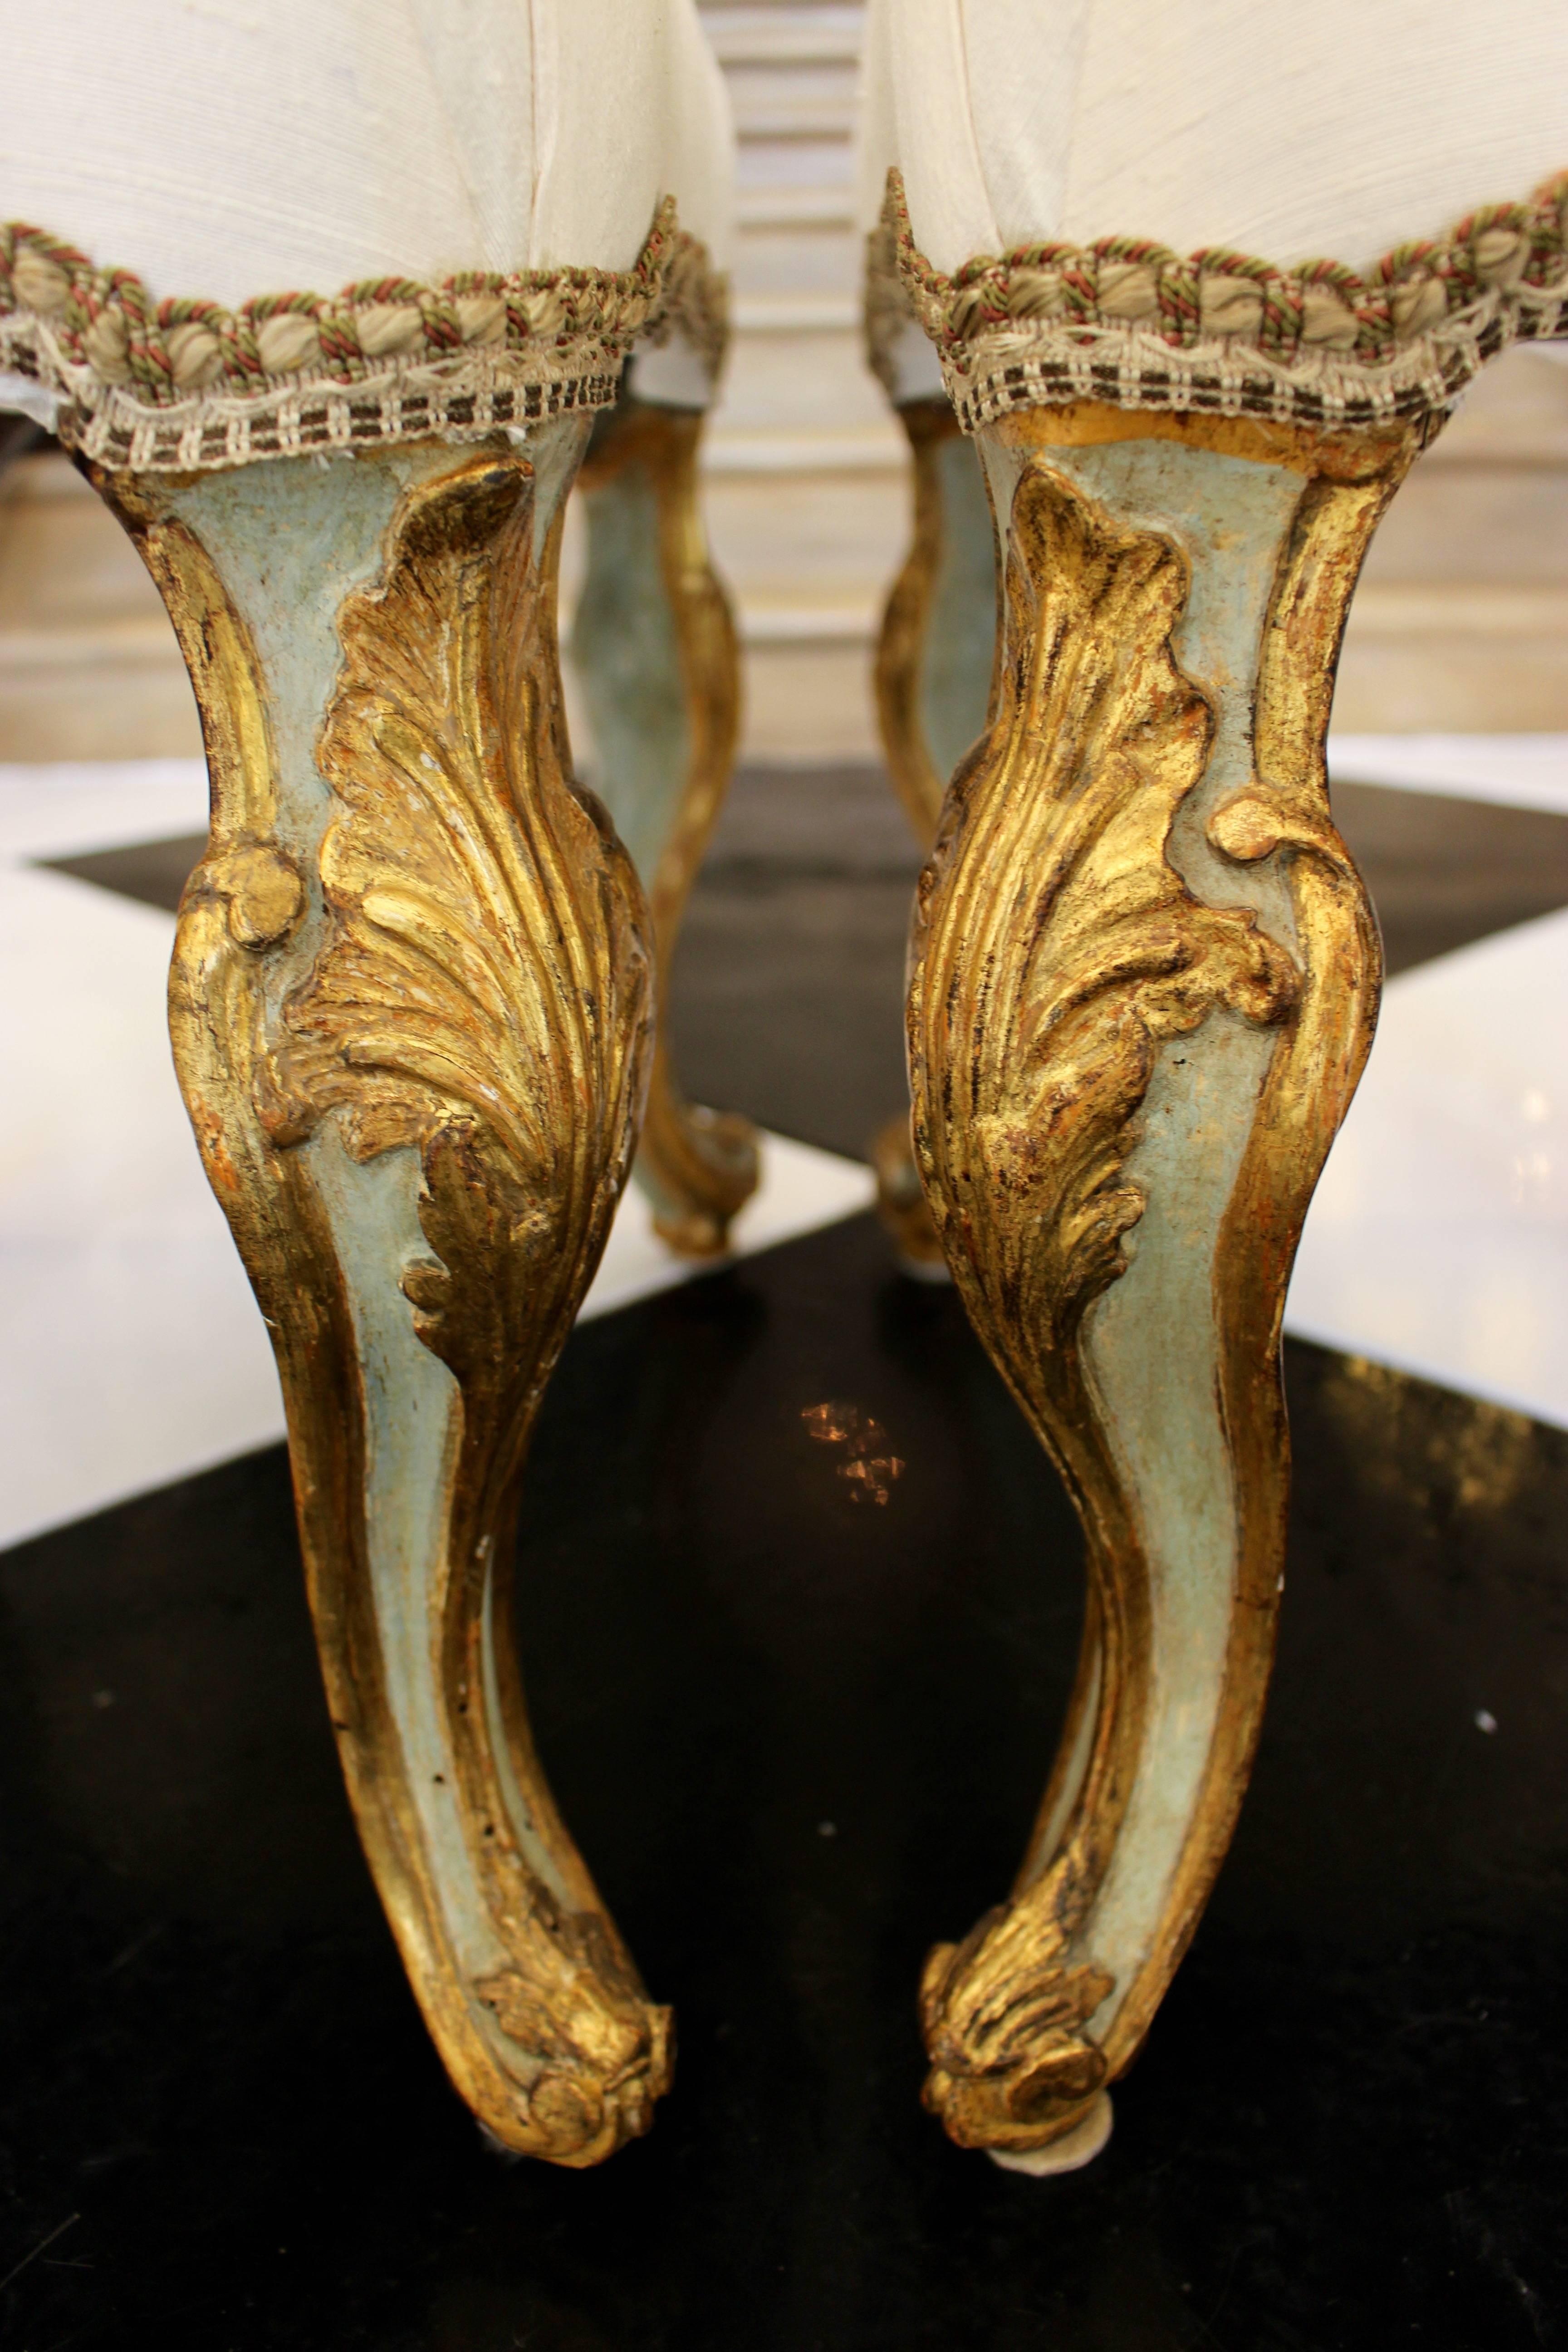 Paire de tabourets italiens de style rococo piémontais, datant du milieu du XVIIIe siècle, peints et dorés à la feuille, provenant de la collection du designer Gary Tisdale-Woods, avec pieds cabriole et rembourrage. Née dans les années 1750 dans le